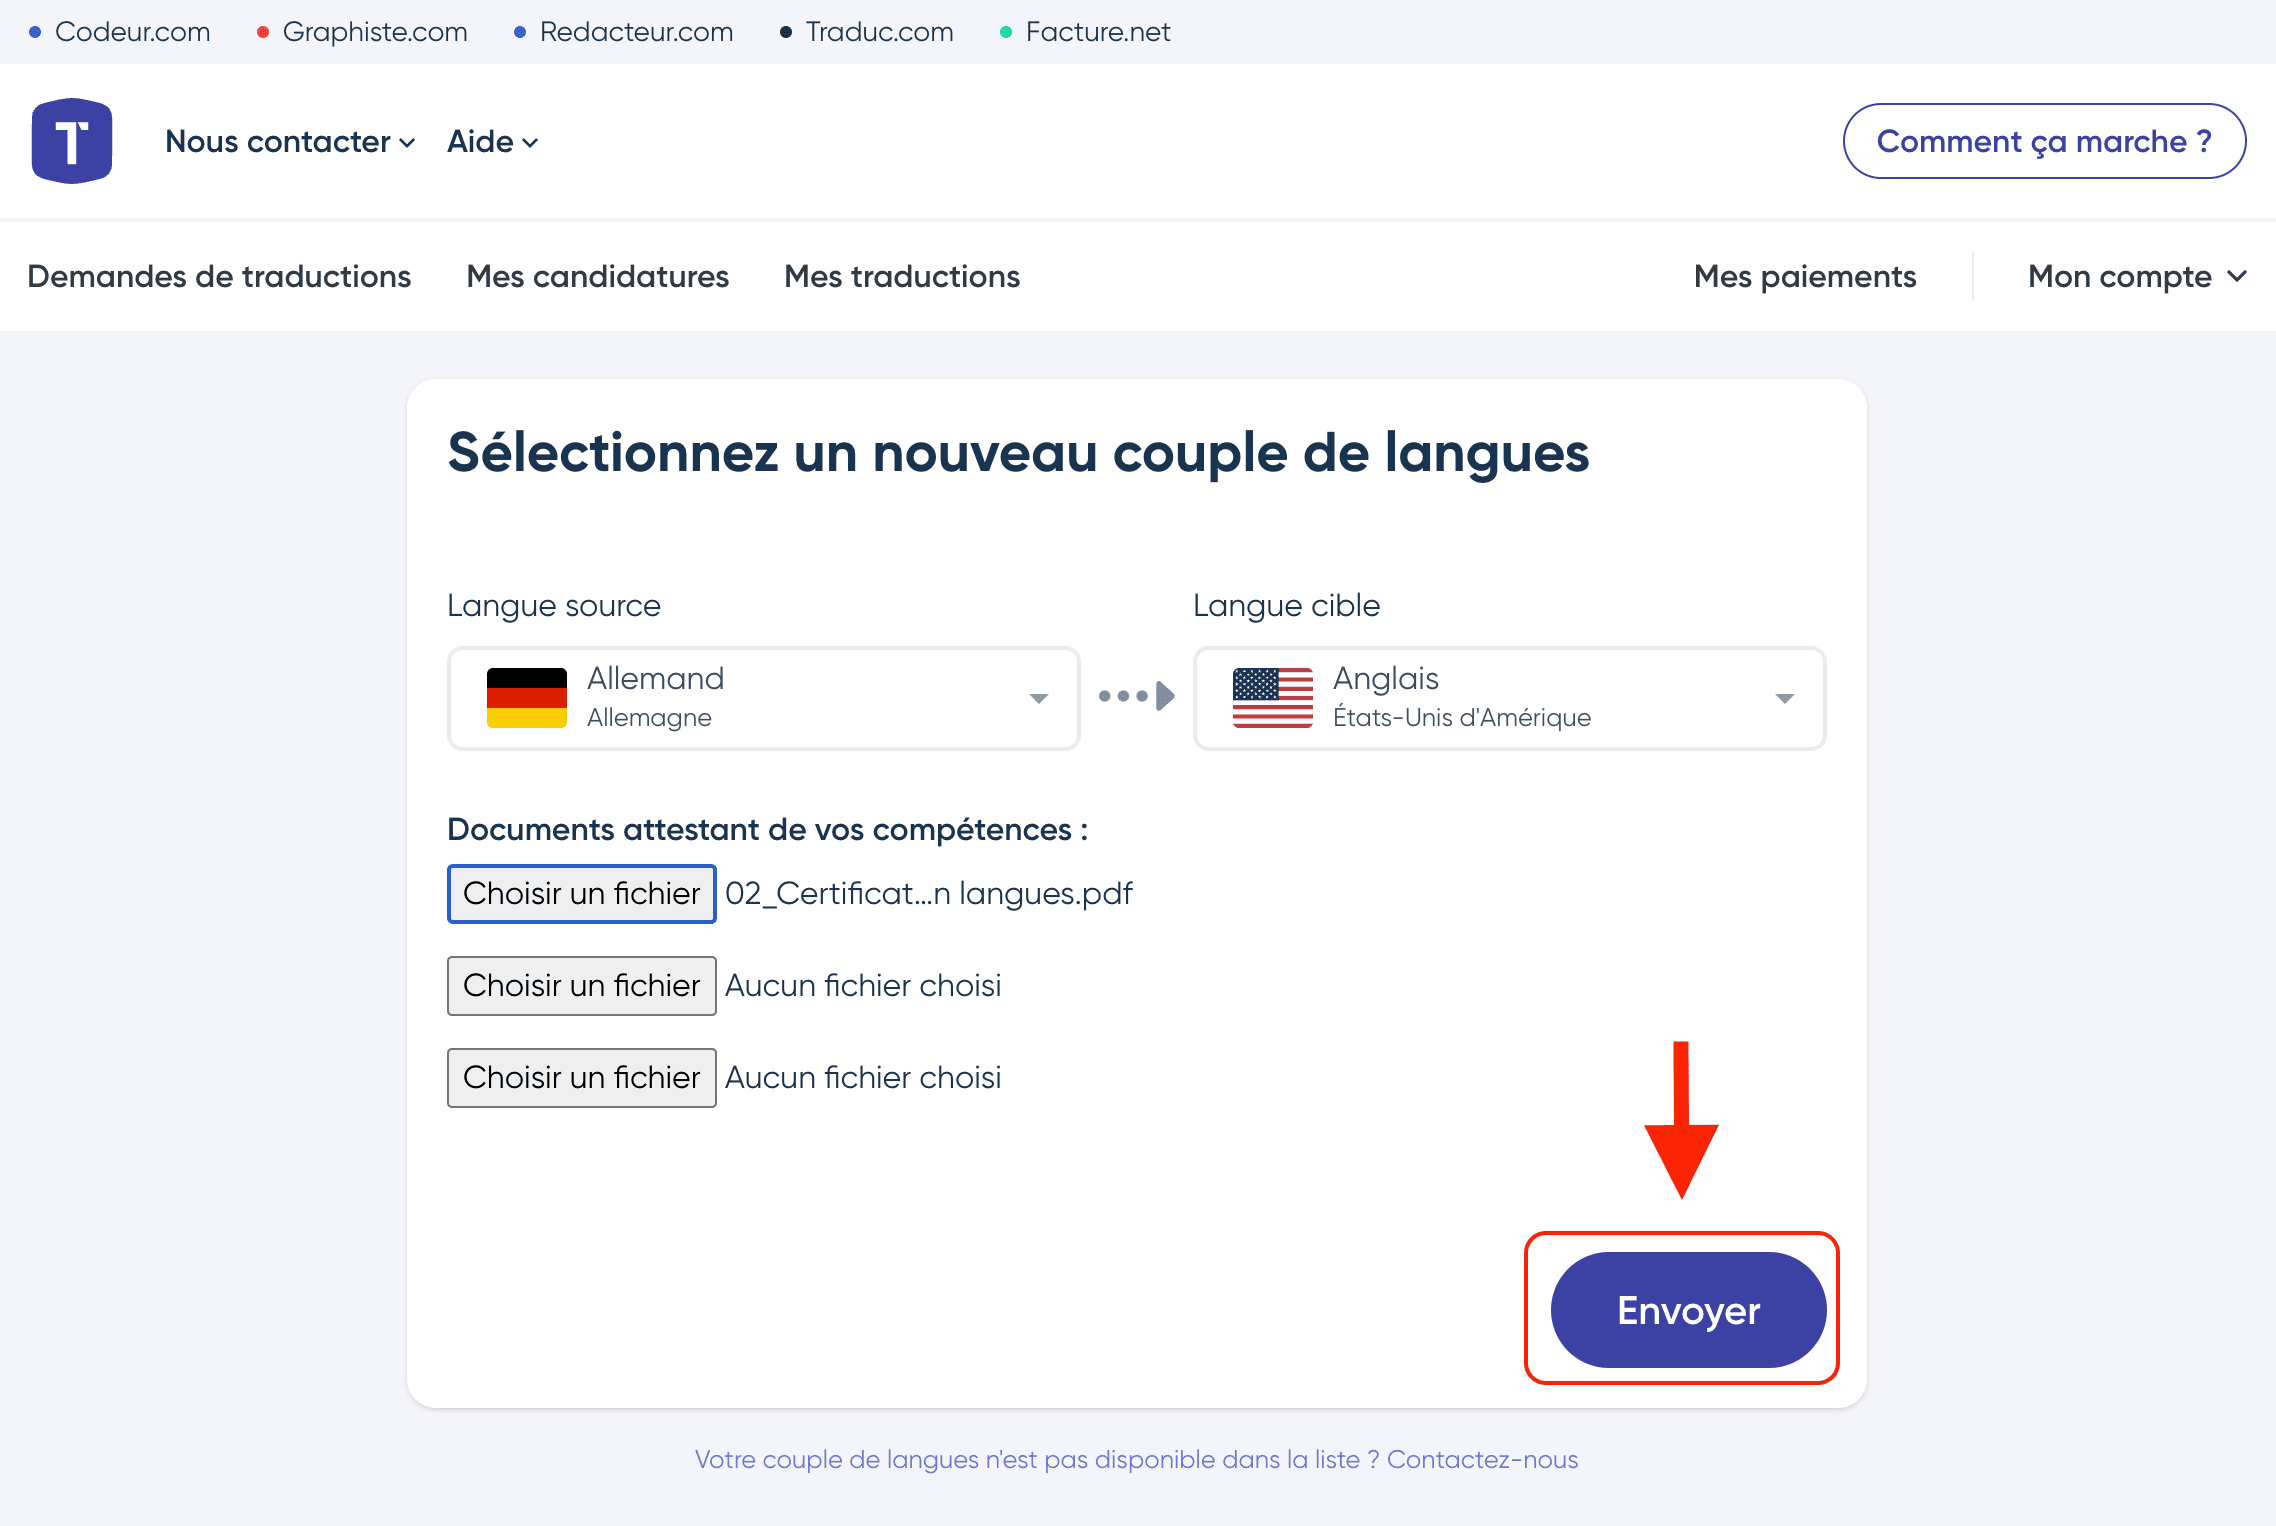 Envoyer la demande d'ajout de couple de langues